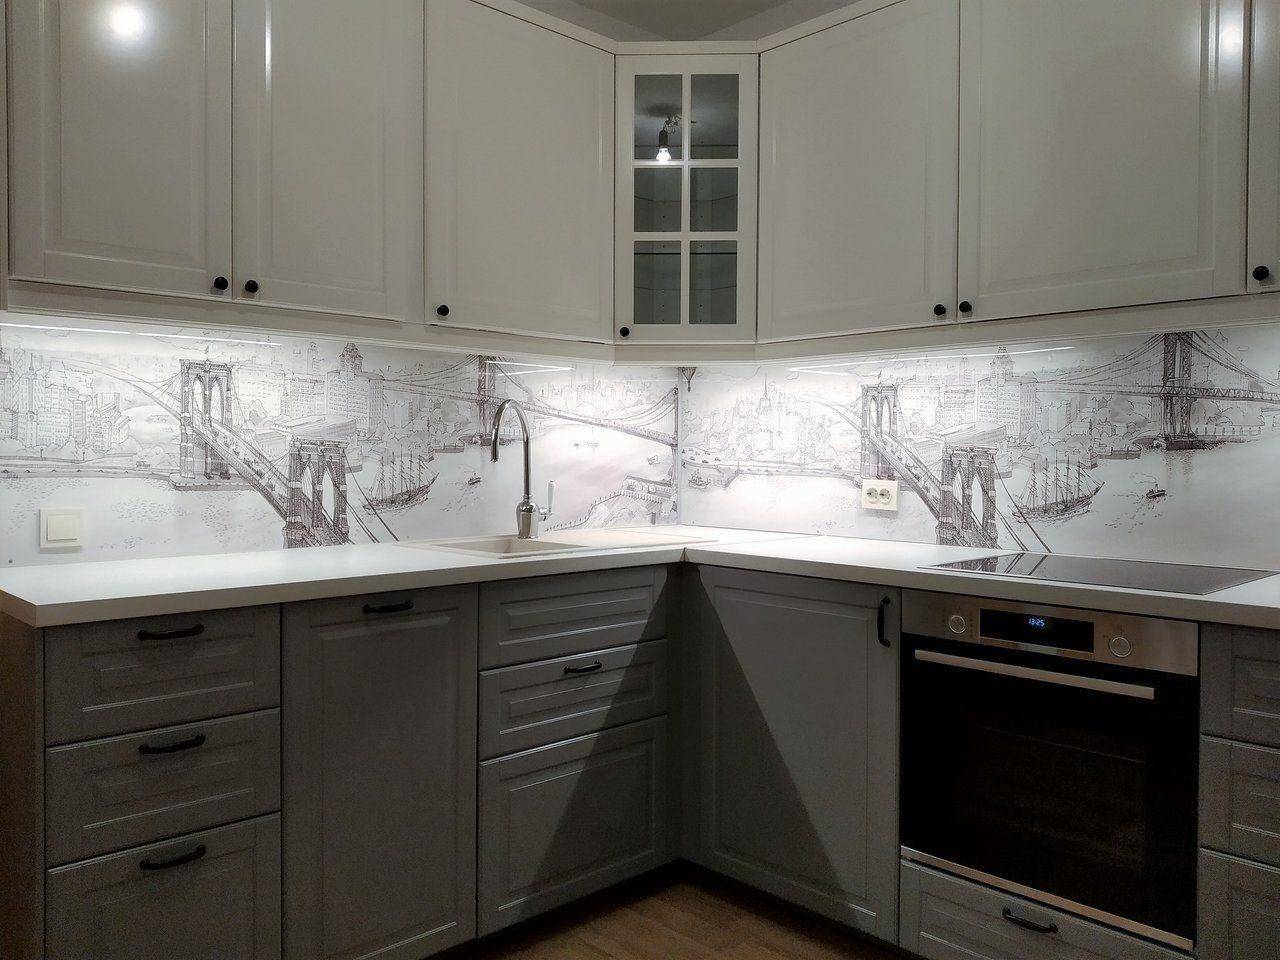 Скинали для кухни: особенности фартука из стекла, плюсы и минусы установки пластиковых кухонных скиналей + фото реальных интерьеров